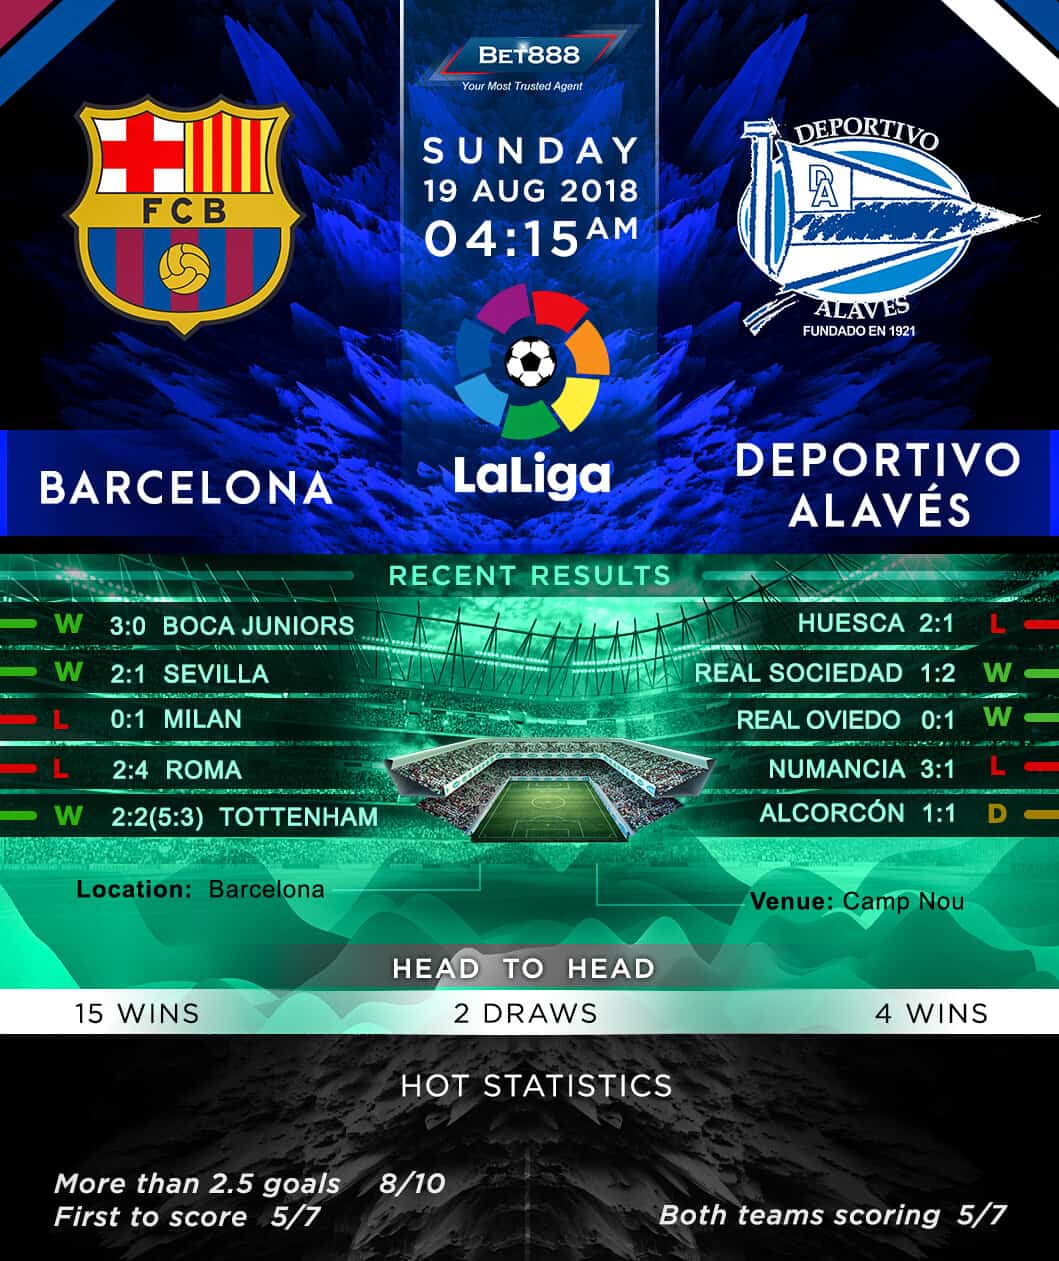 Barcelona vs Deportivo Alaves 19/08/18